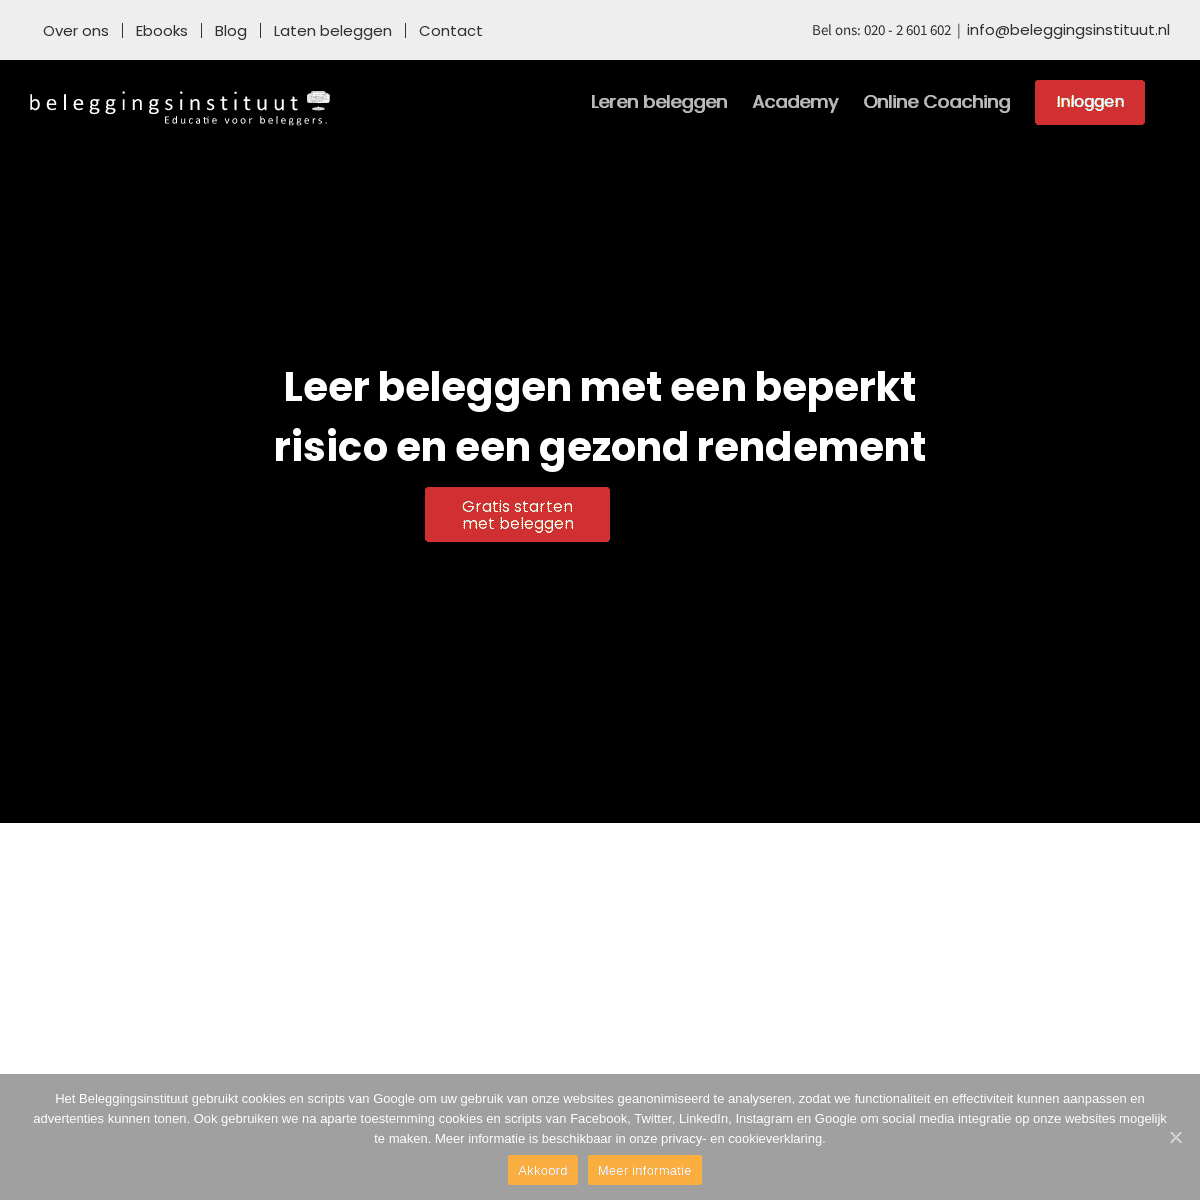 A complete backup of https://beleggingsinstituut.nl